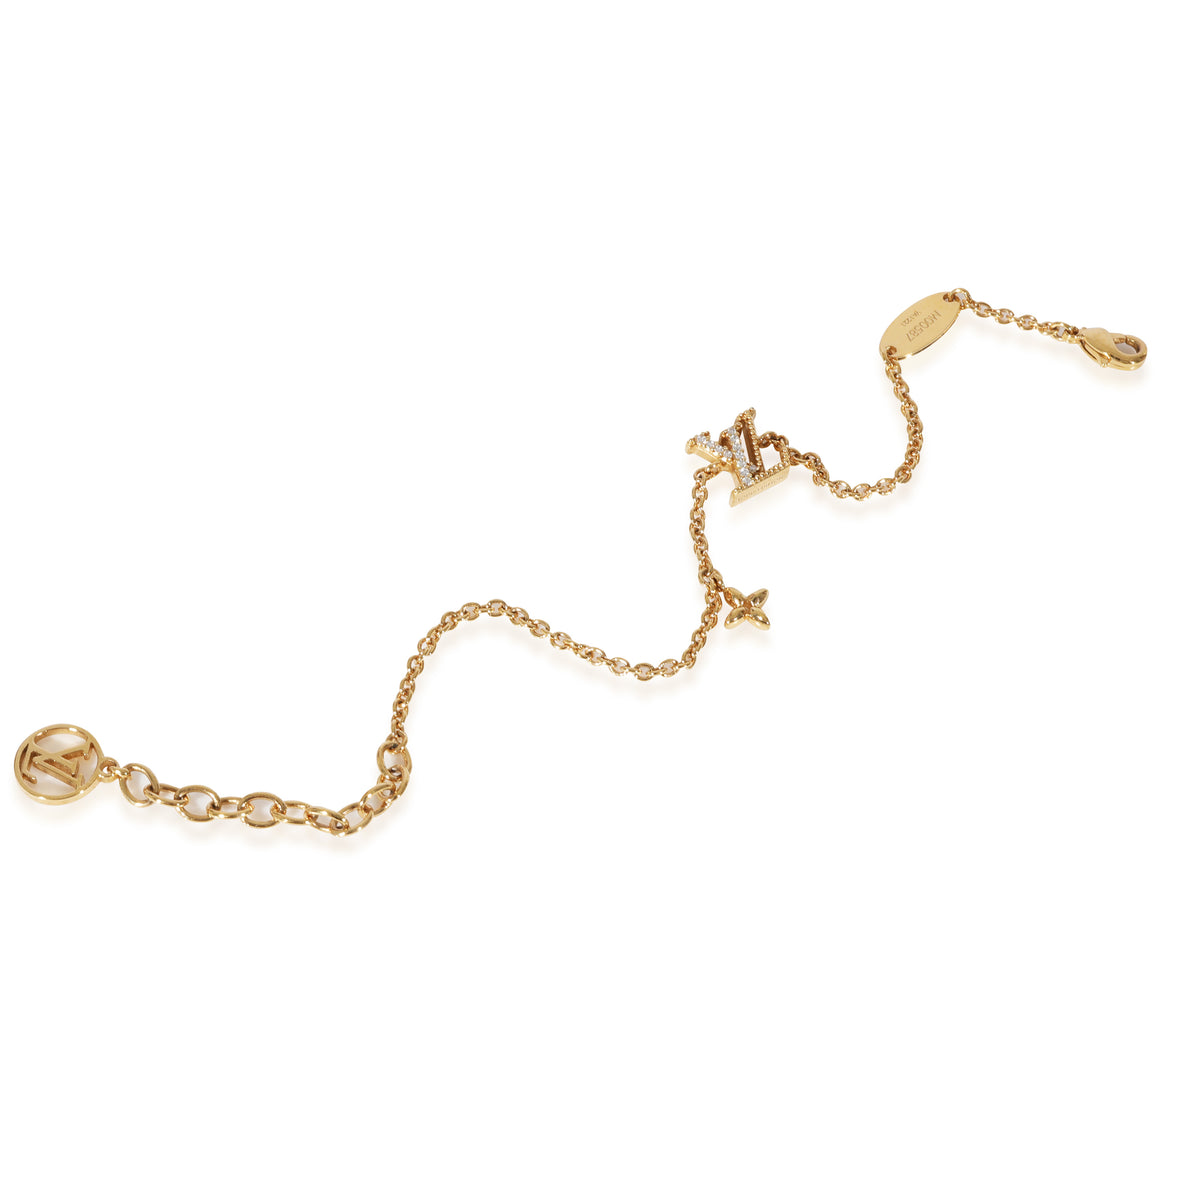 Louis Vuitton LV Iconic Bracelet Gold